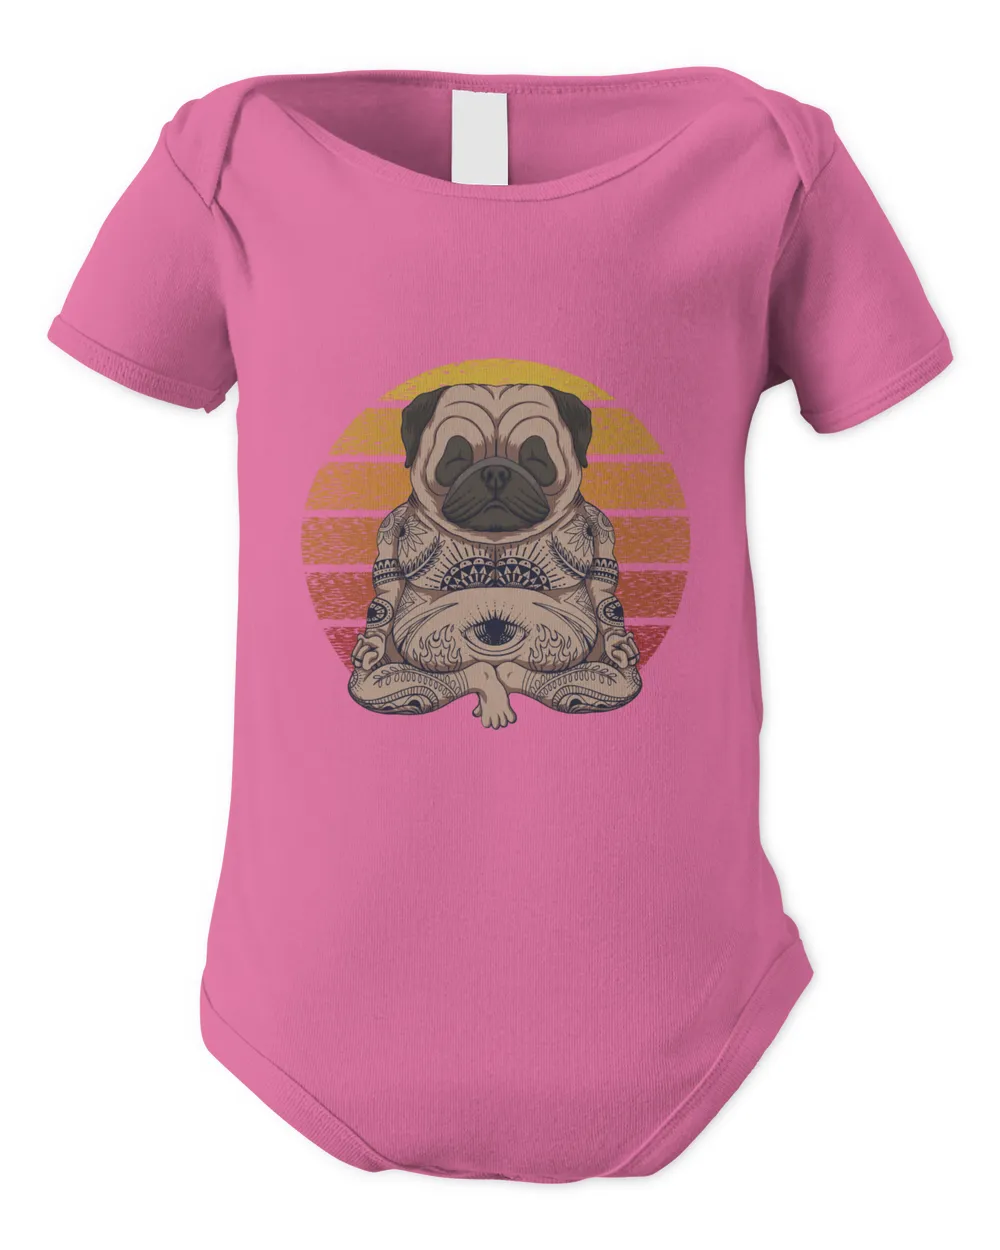 Yoga Bulldog Shirt